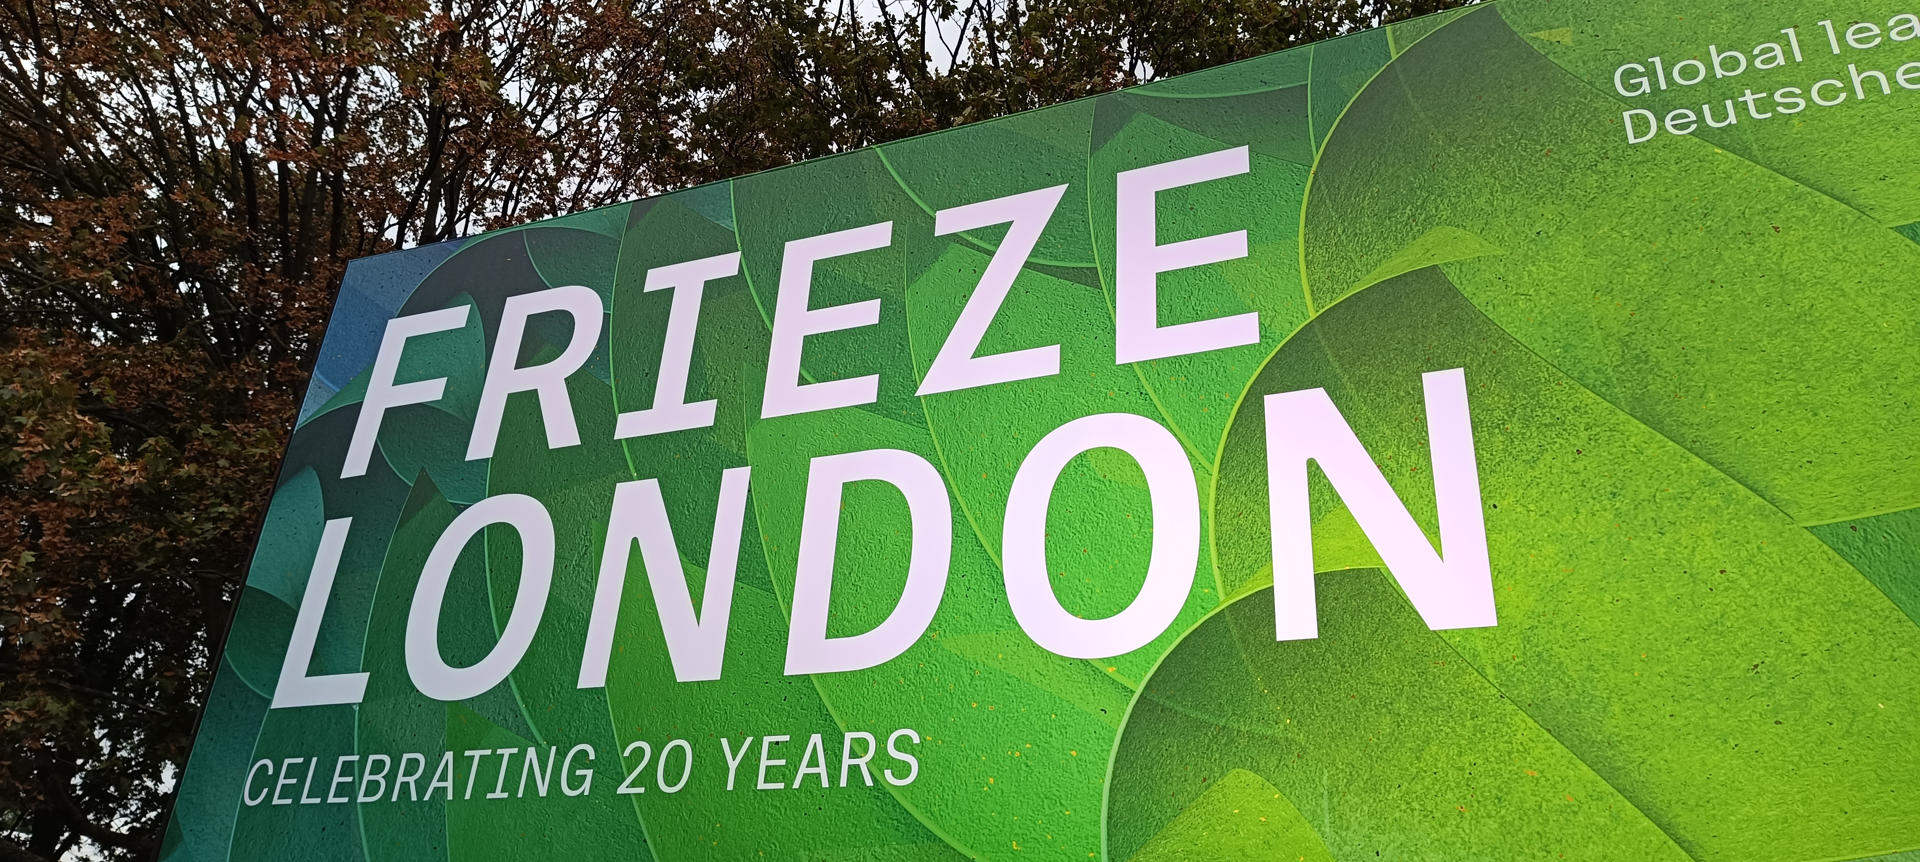 La feria de arte contemporáneo Frieze de Londres celebra su 20 aniversario